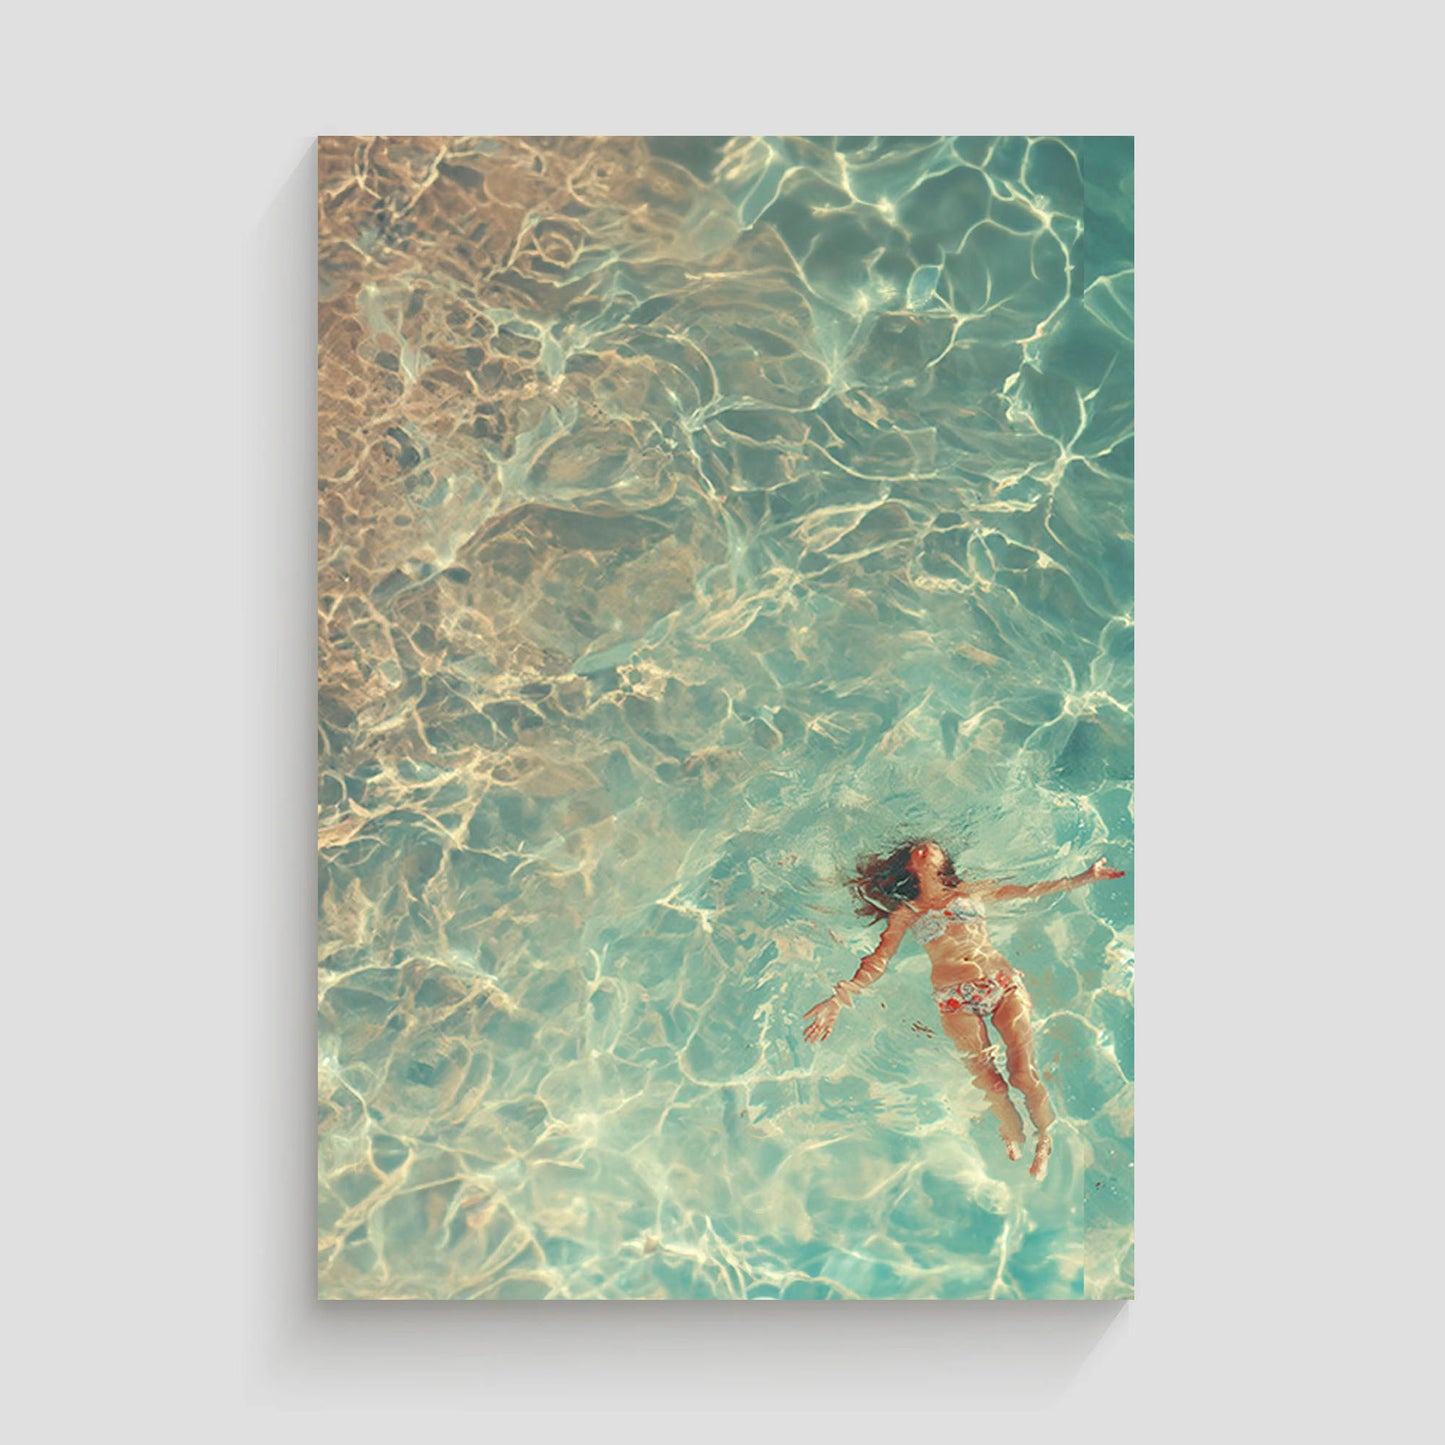 Mujer flotando en aguas cristalinas y turquesas, vista aérea.